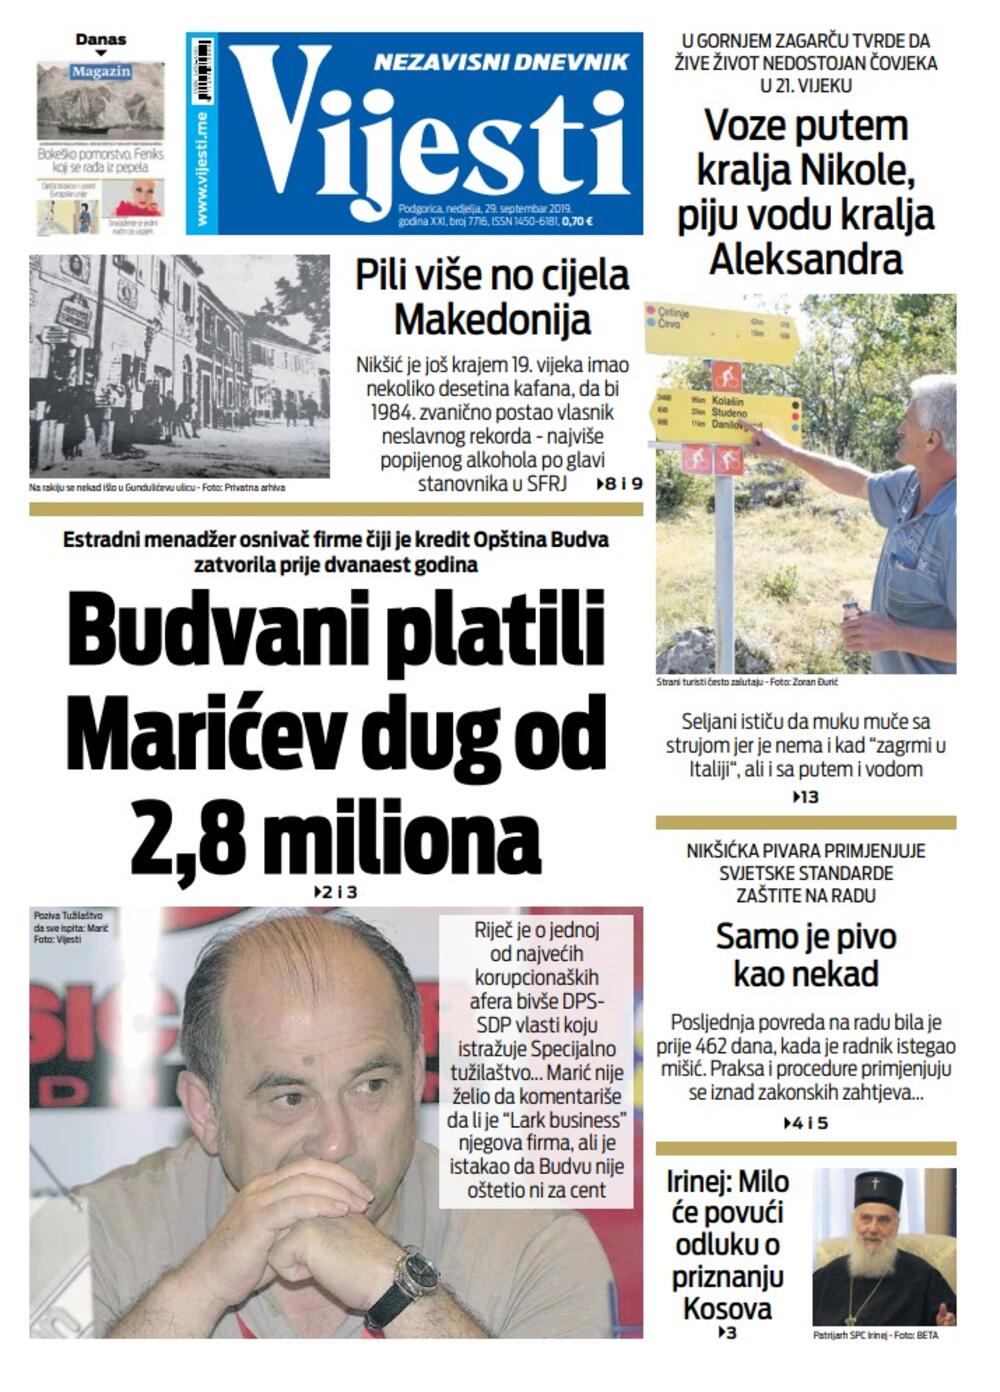 Naslovna strana "Vijesti" za 29. septembar, Foto: Vijesti